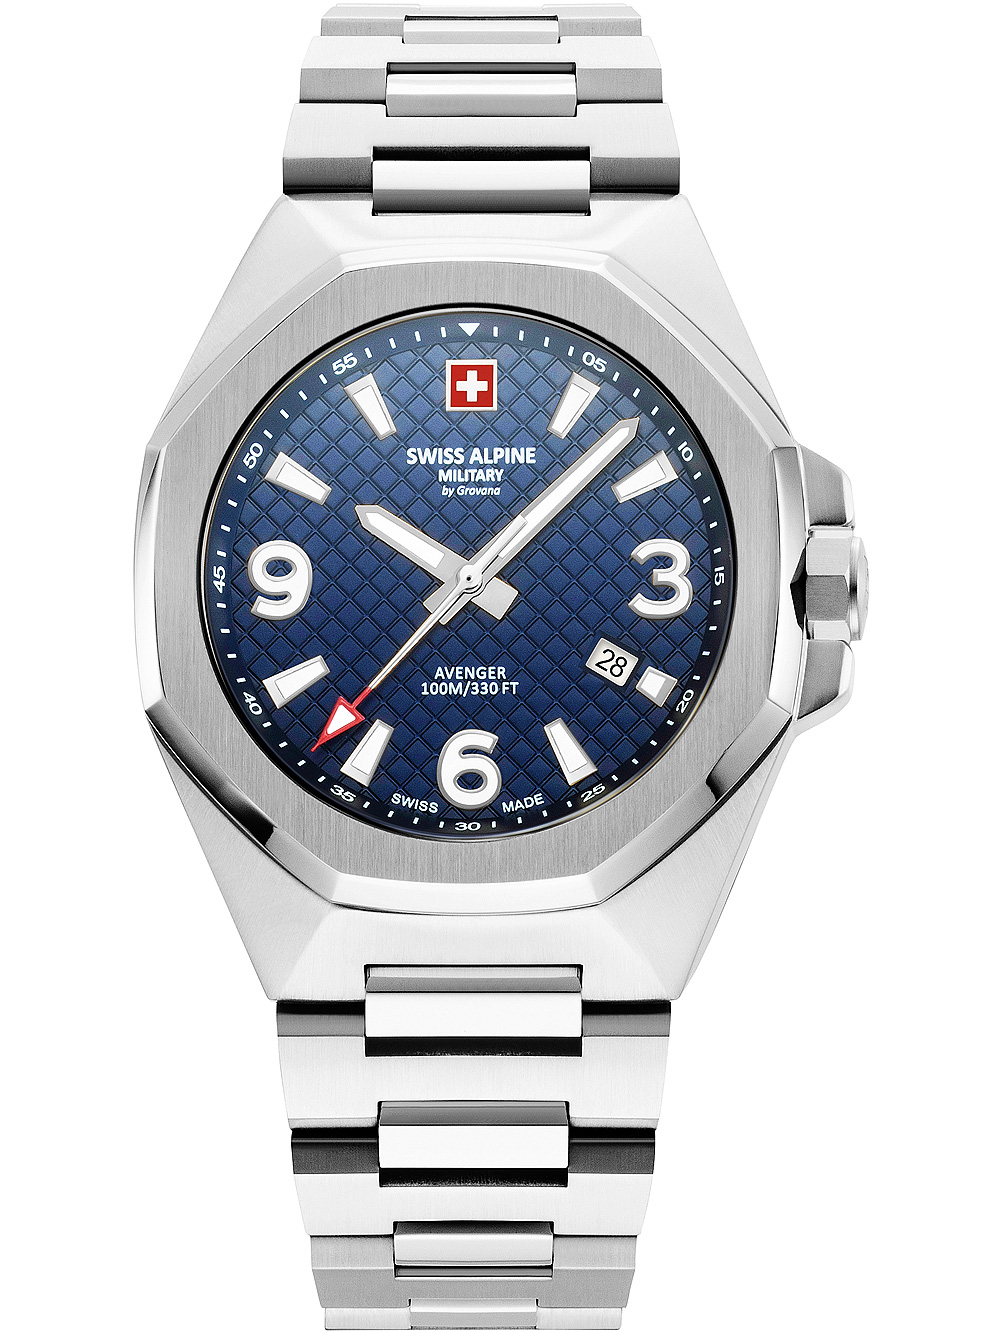 Pánské hodinky Swiss Alpine Military 7005.1135 Avenger